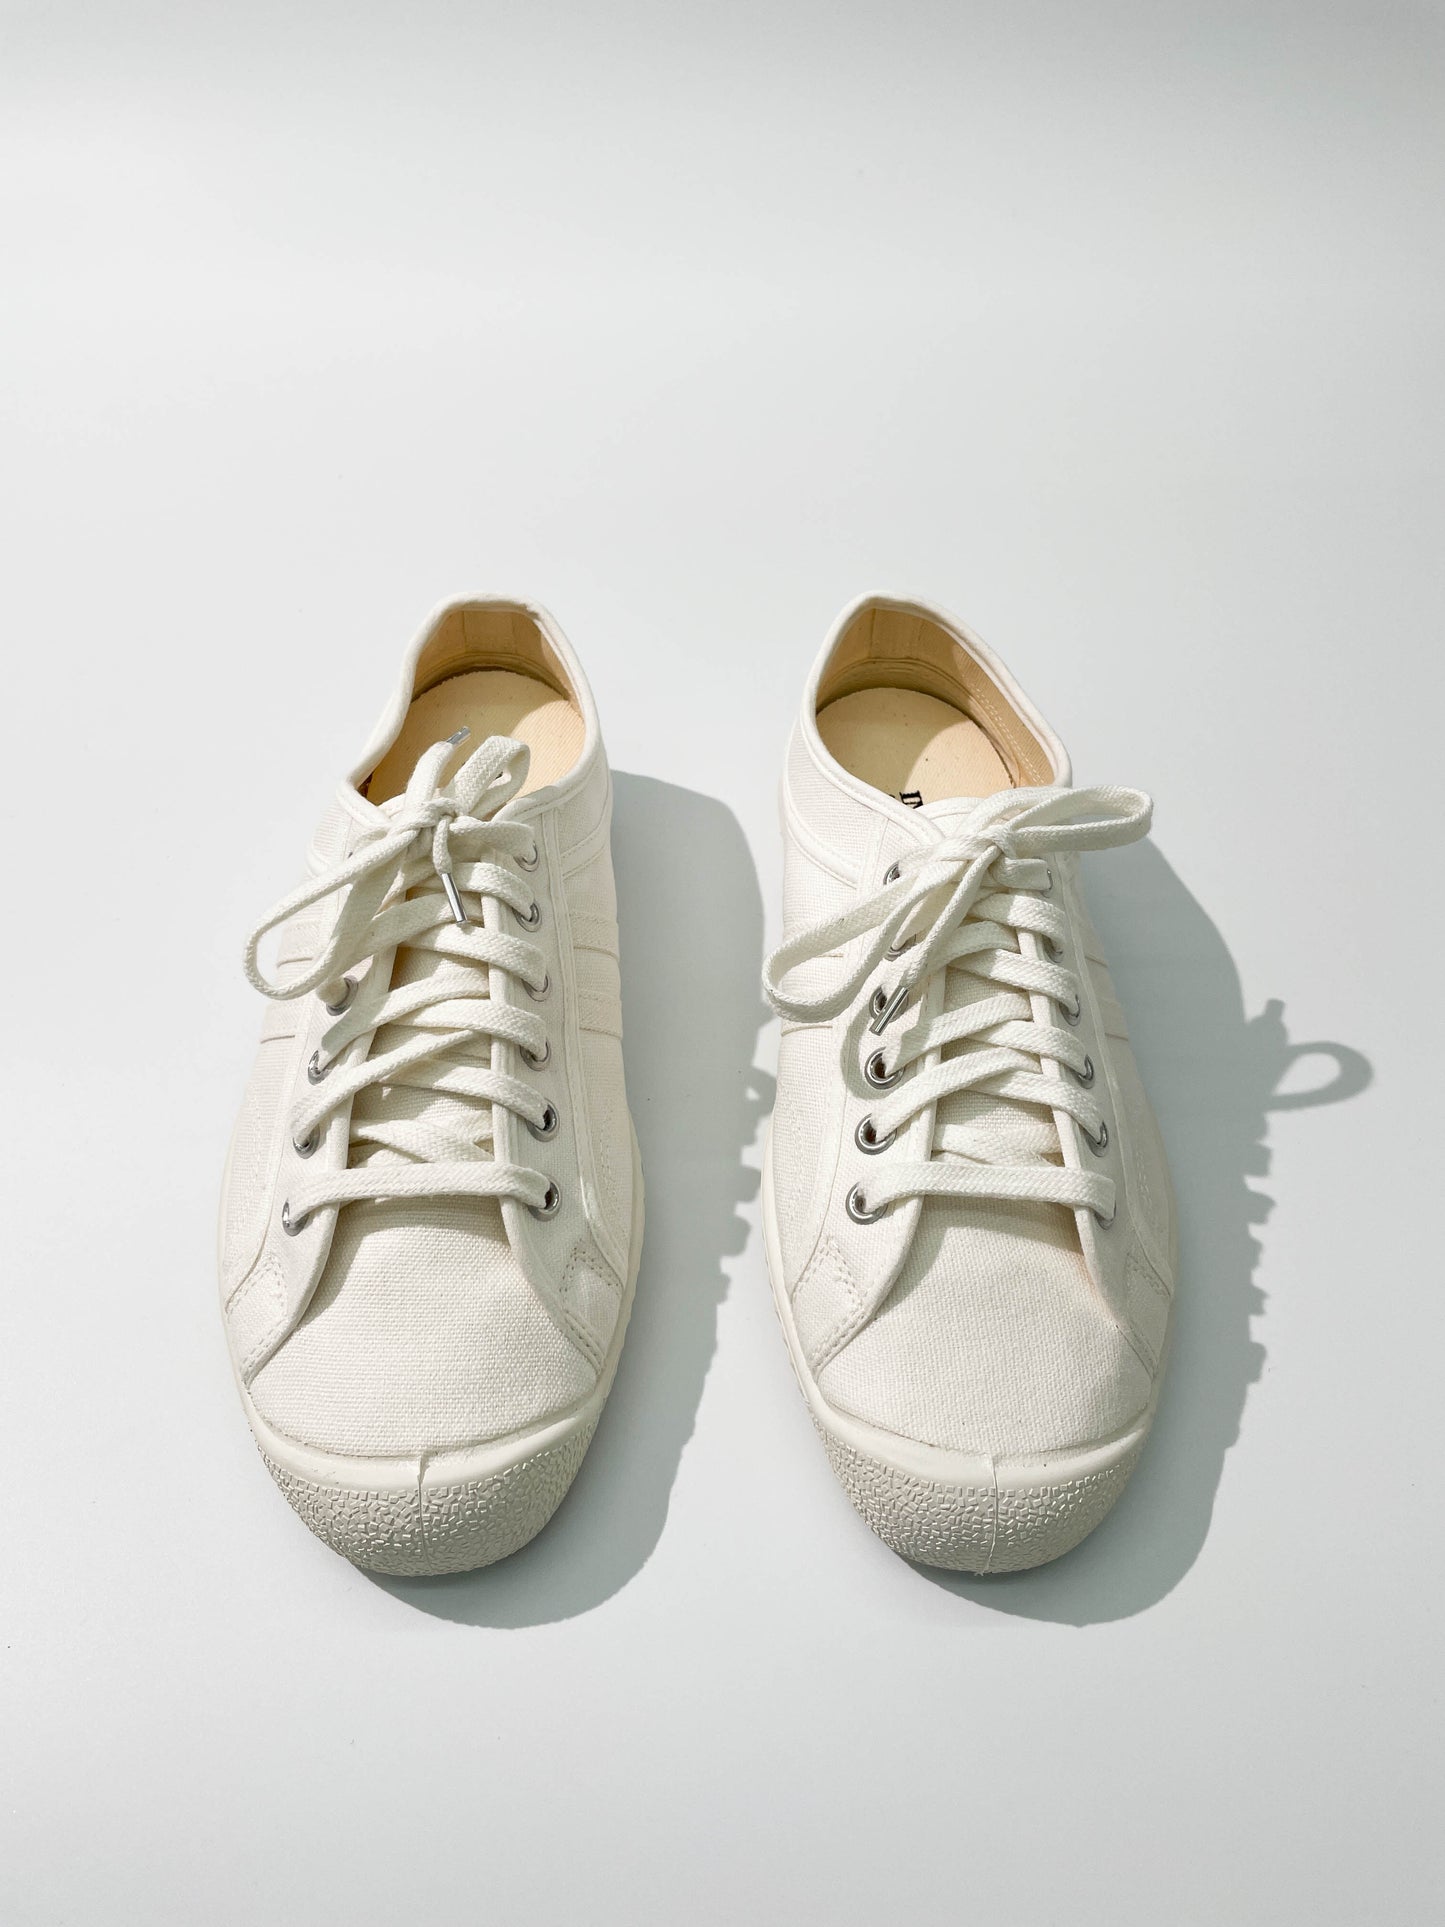 Inn-stant Vegan 帆布鞋(白色) | Inn-stant Vegan Canvas Lo Top Sneaker (White)